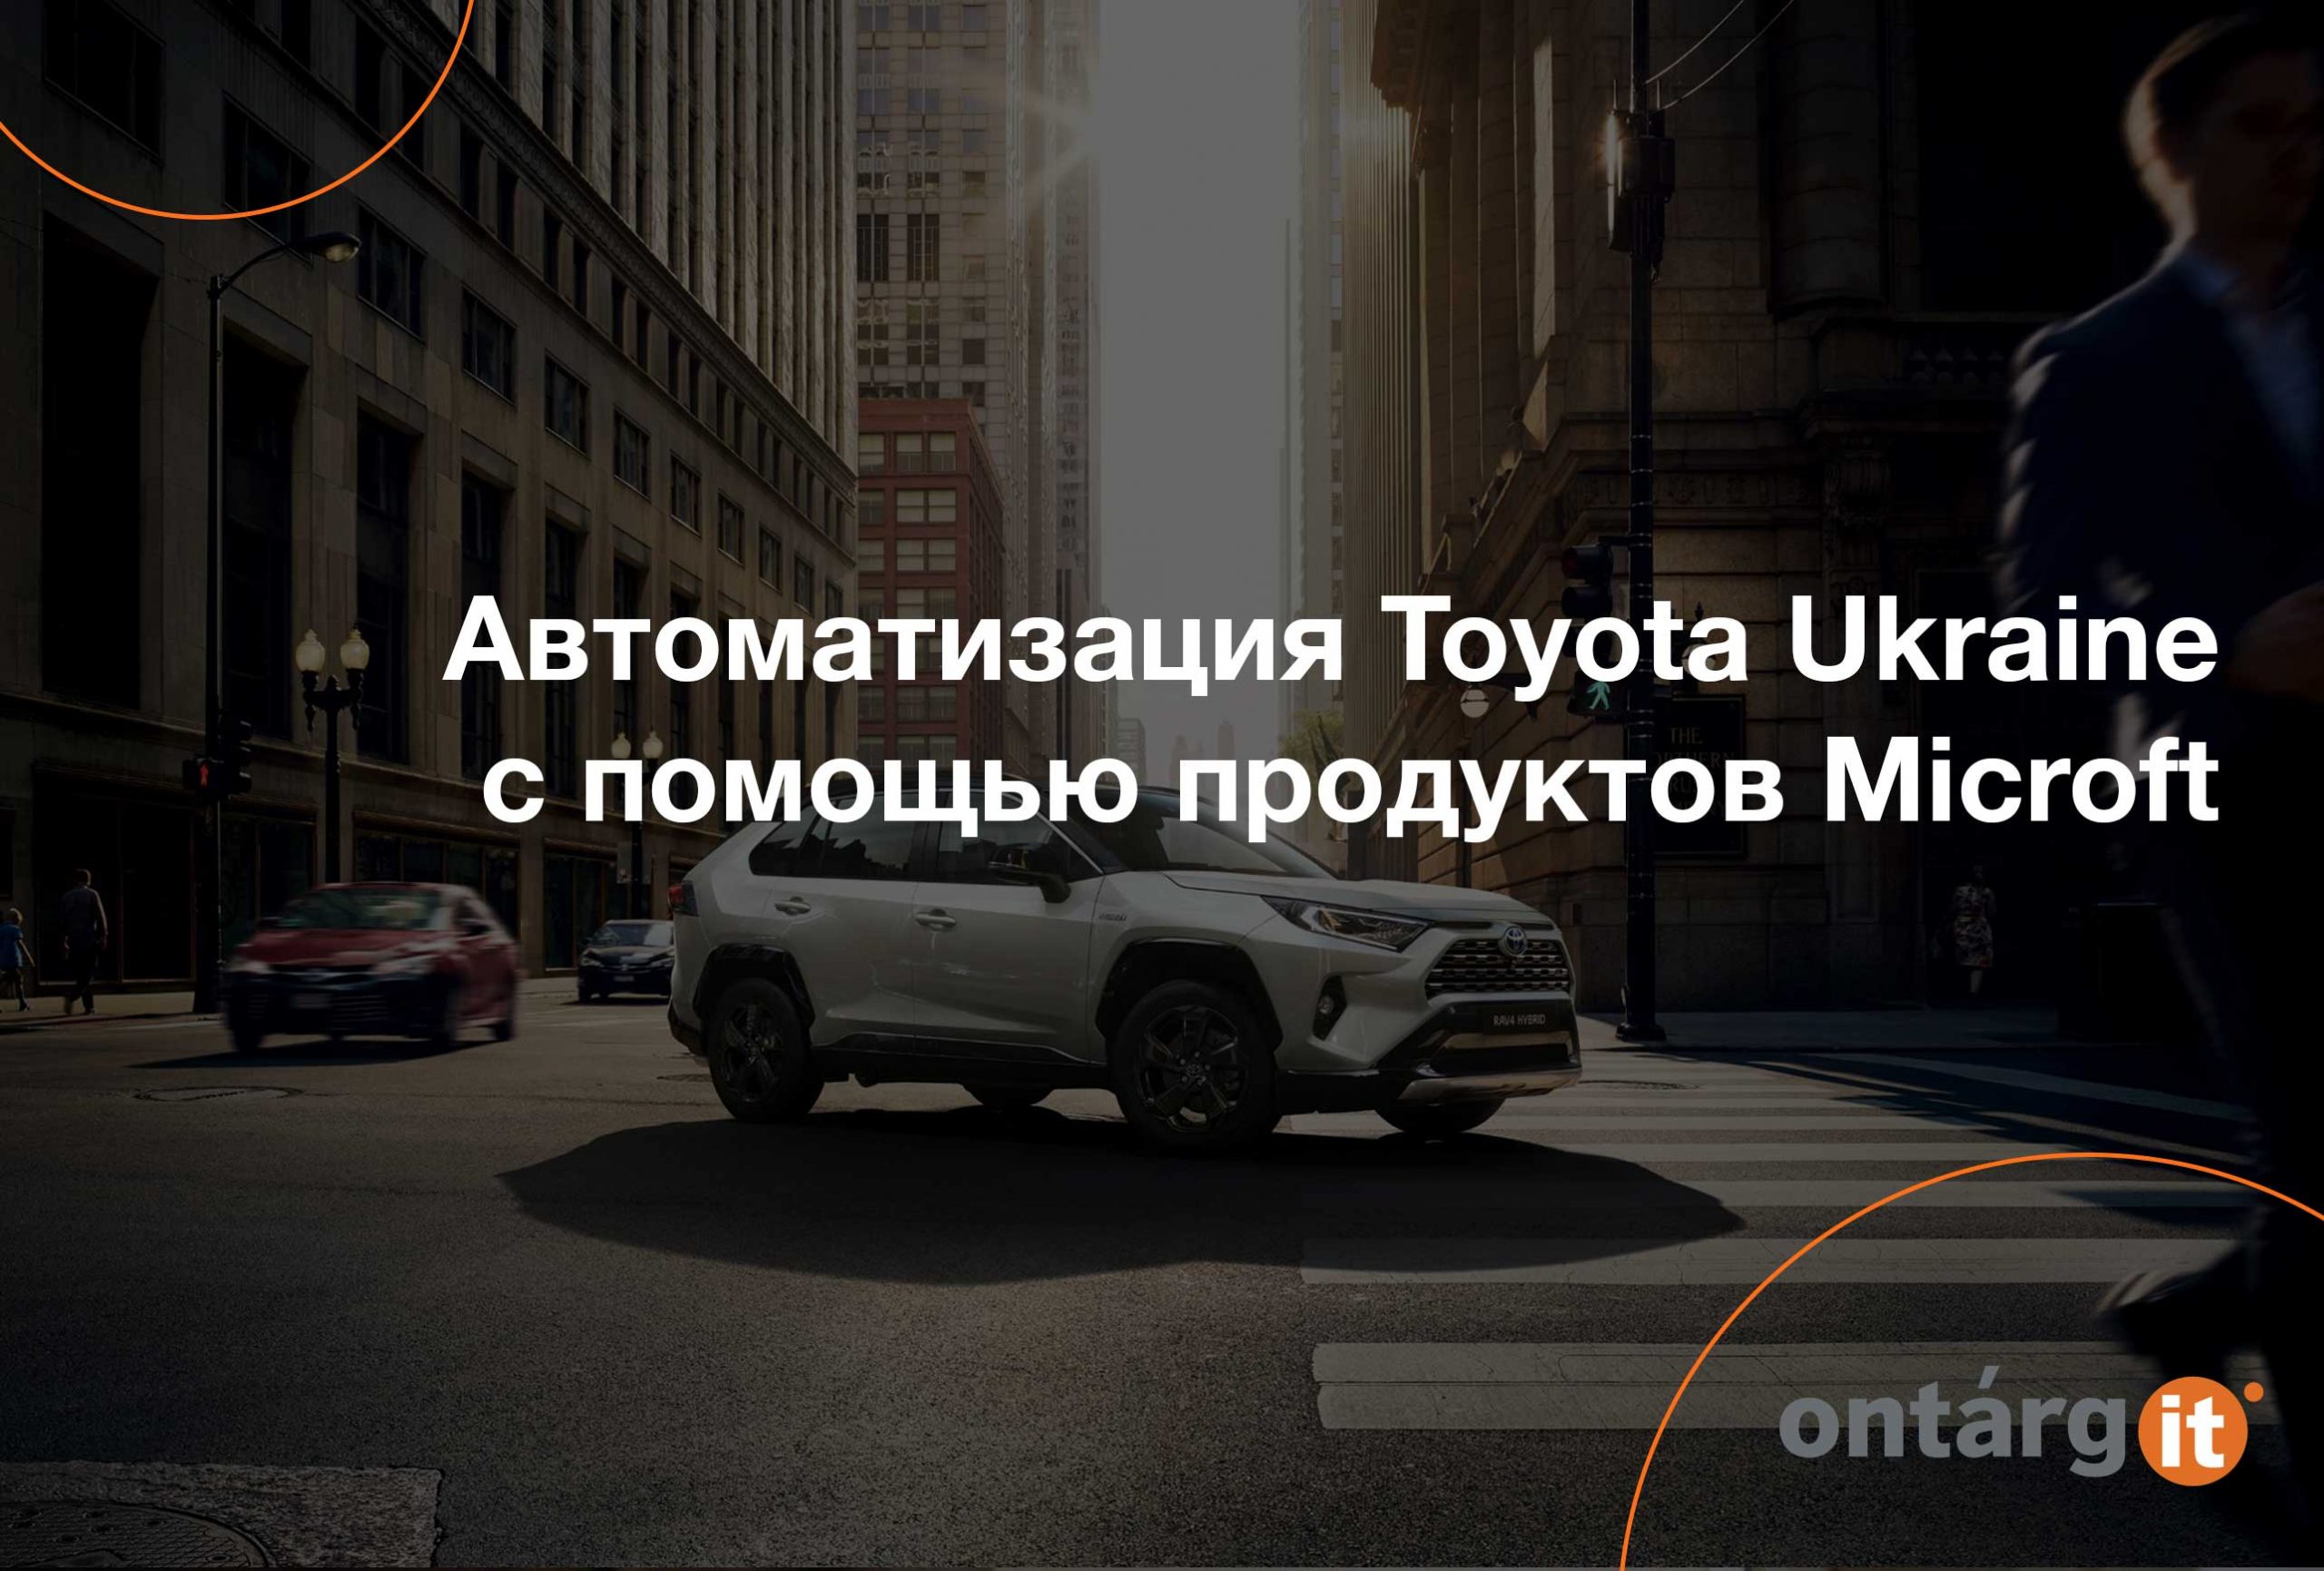 Автоматизация Toyota Ukraine с помощью продуктов Microft